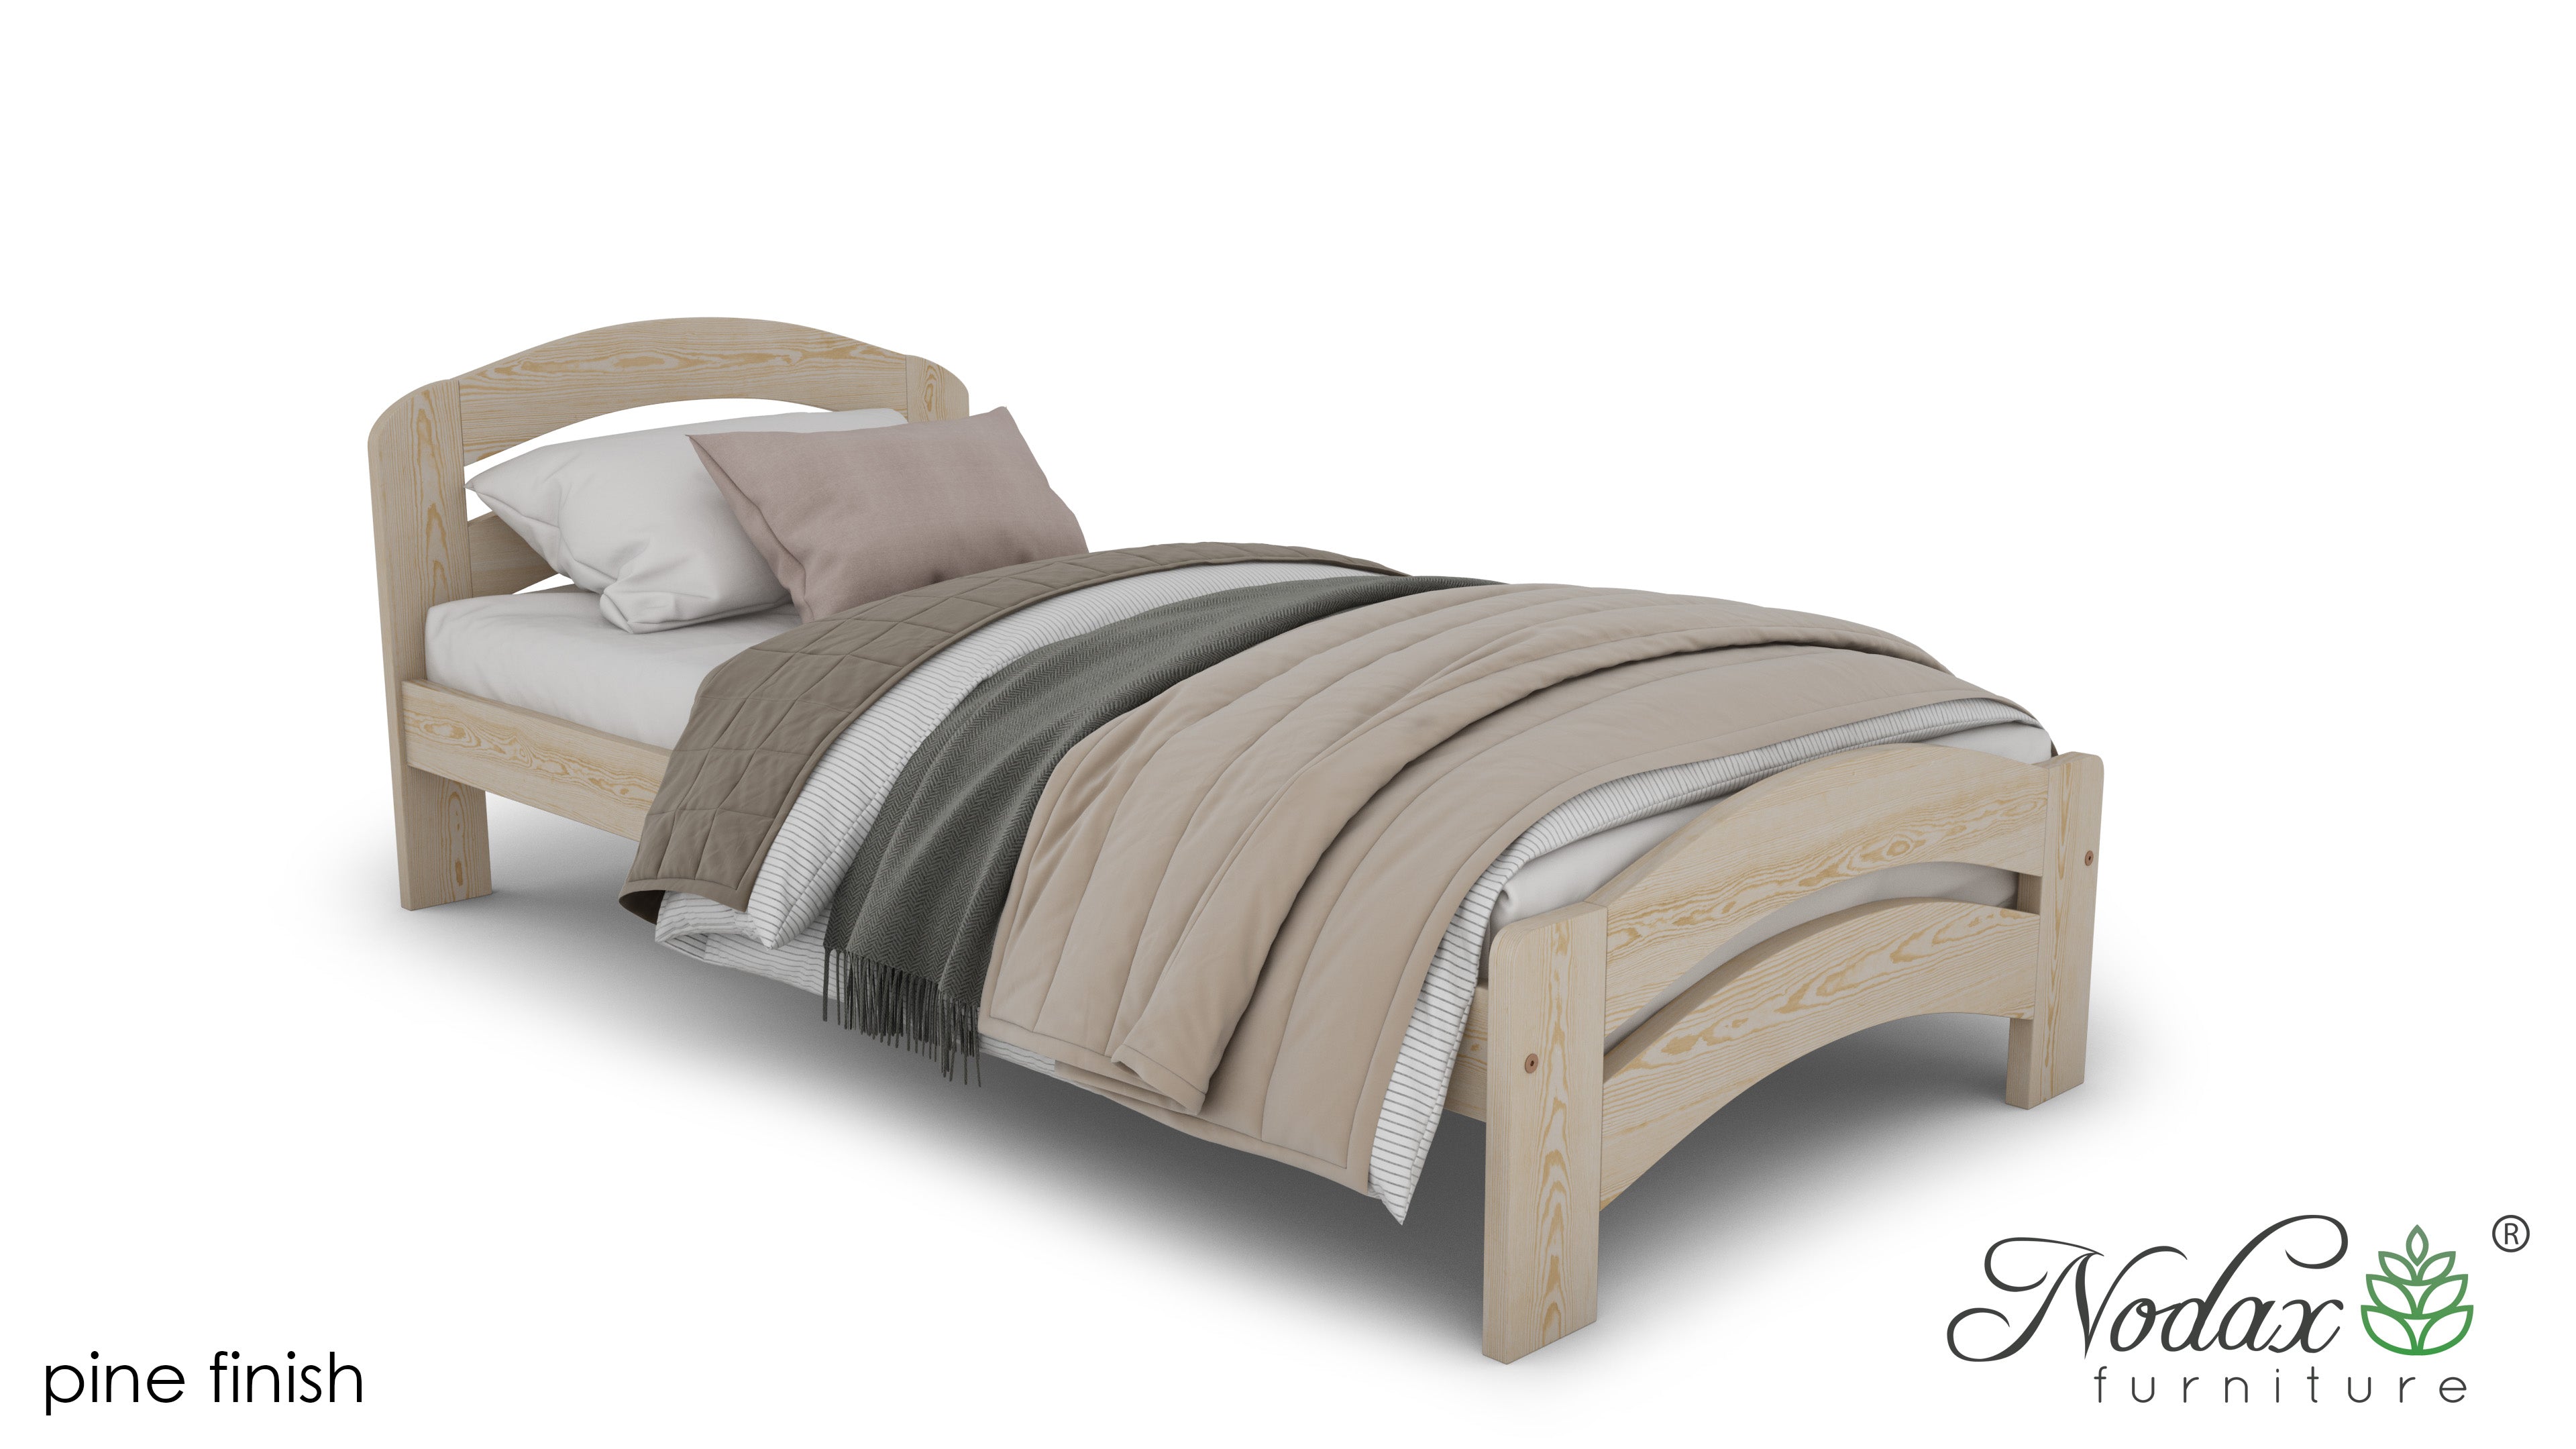      Wooden-bed-frame-beds-online